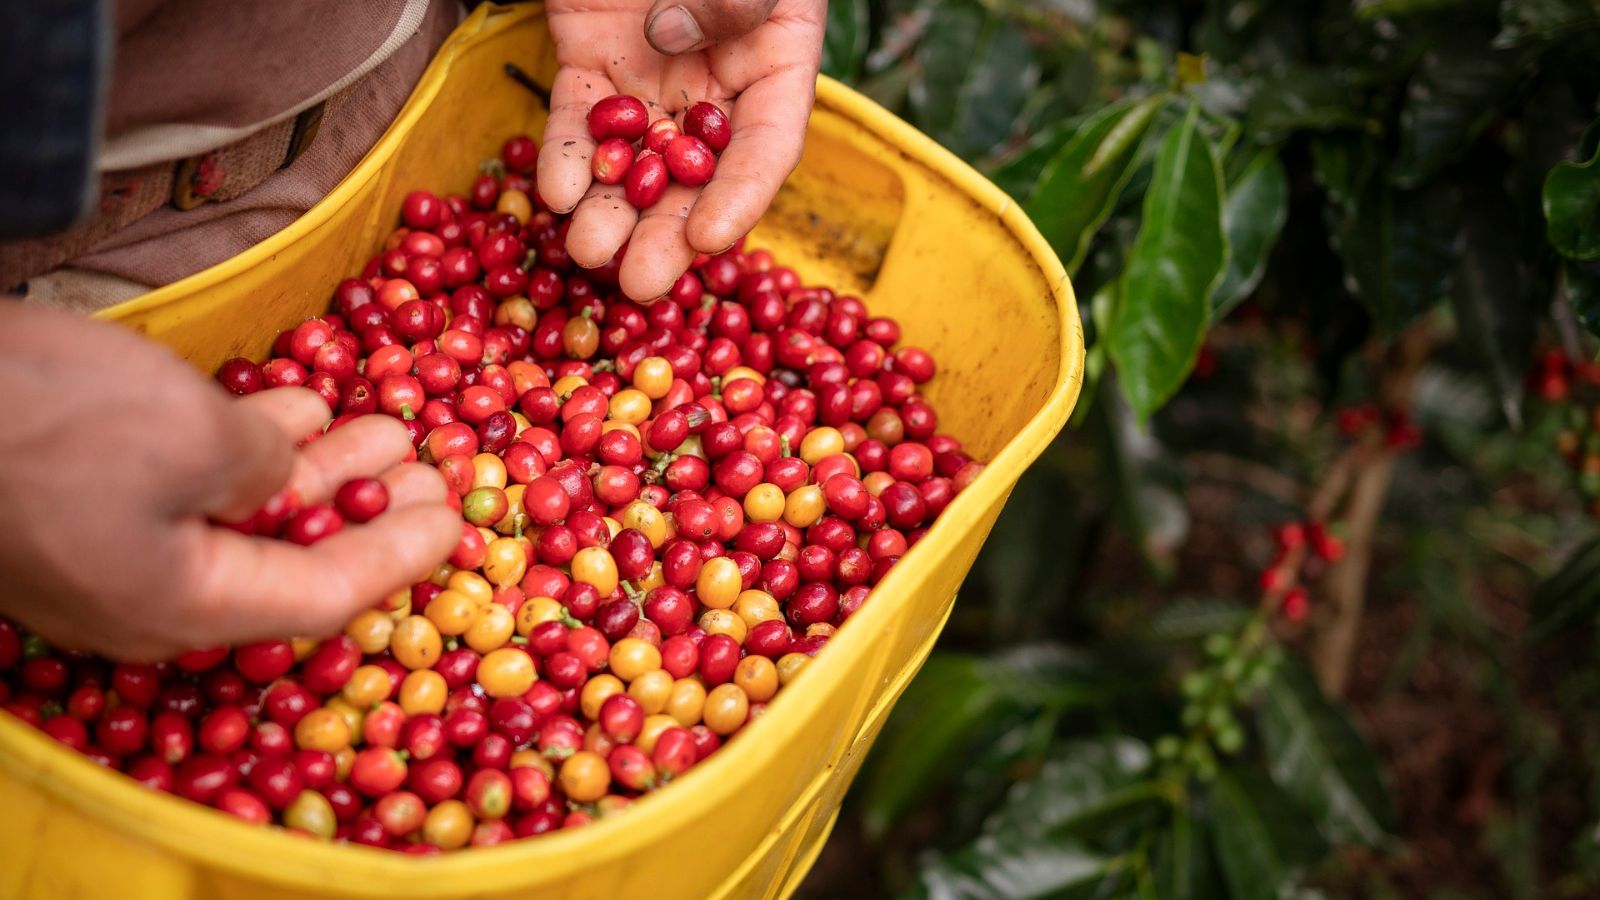 hình ảnh tay người nông dân đang thu hoạch hạt cà phê colombia ngon nhất thế giới 